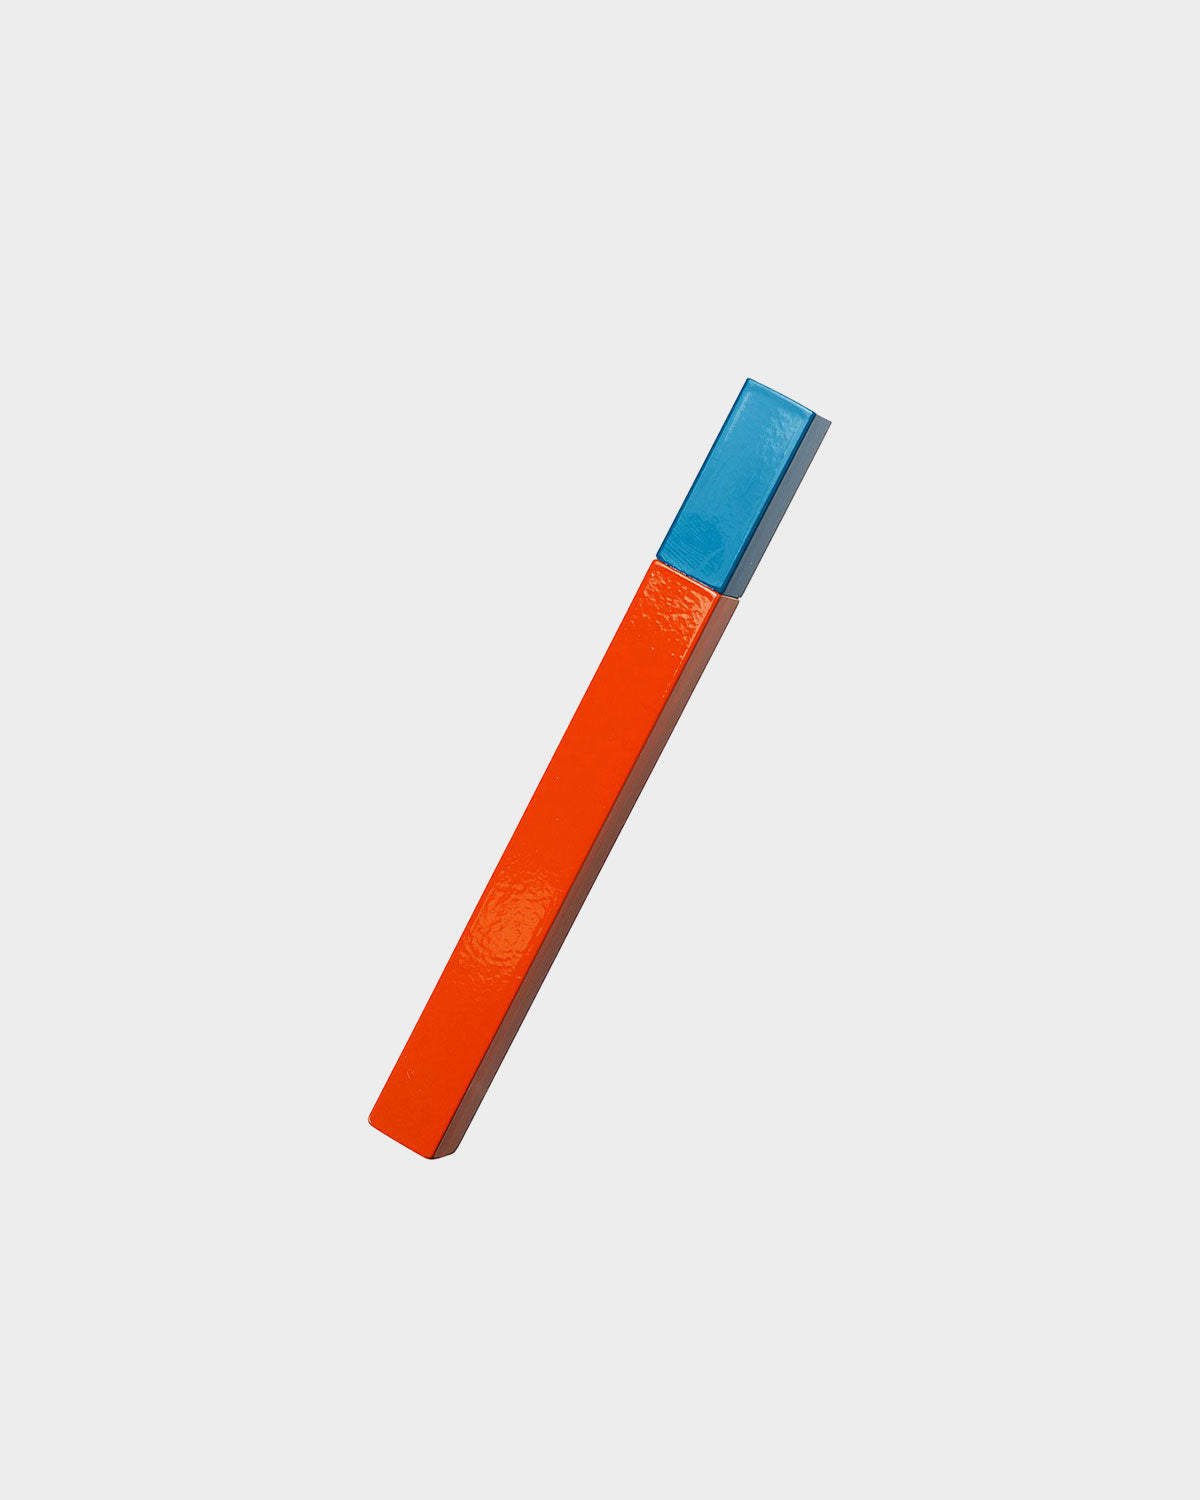 Queue Lighter - Orange/Turquoise